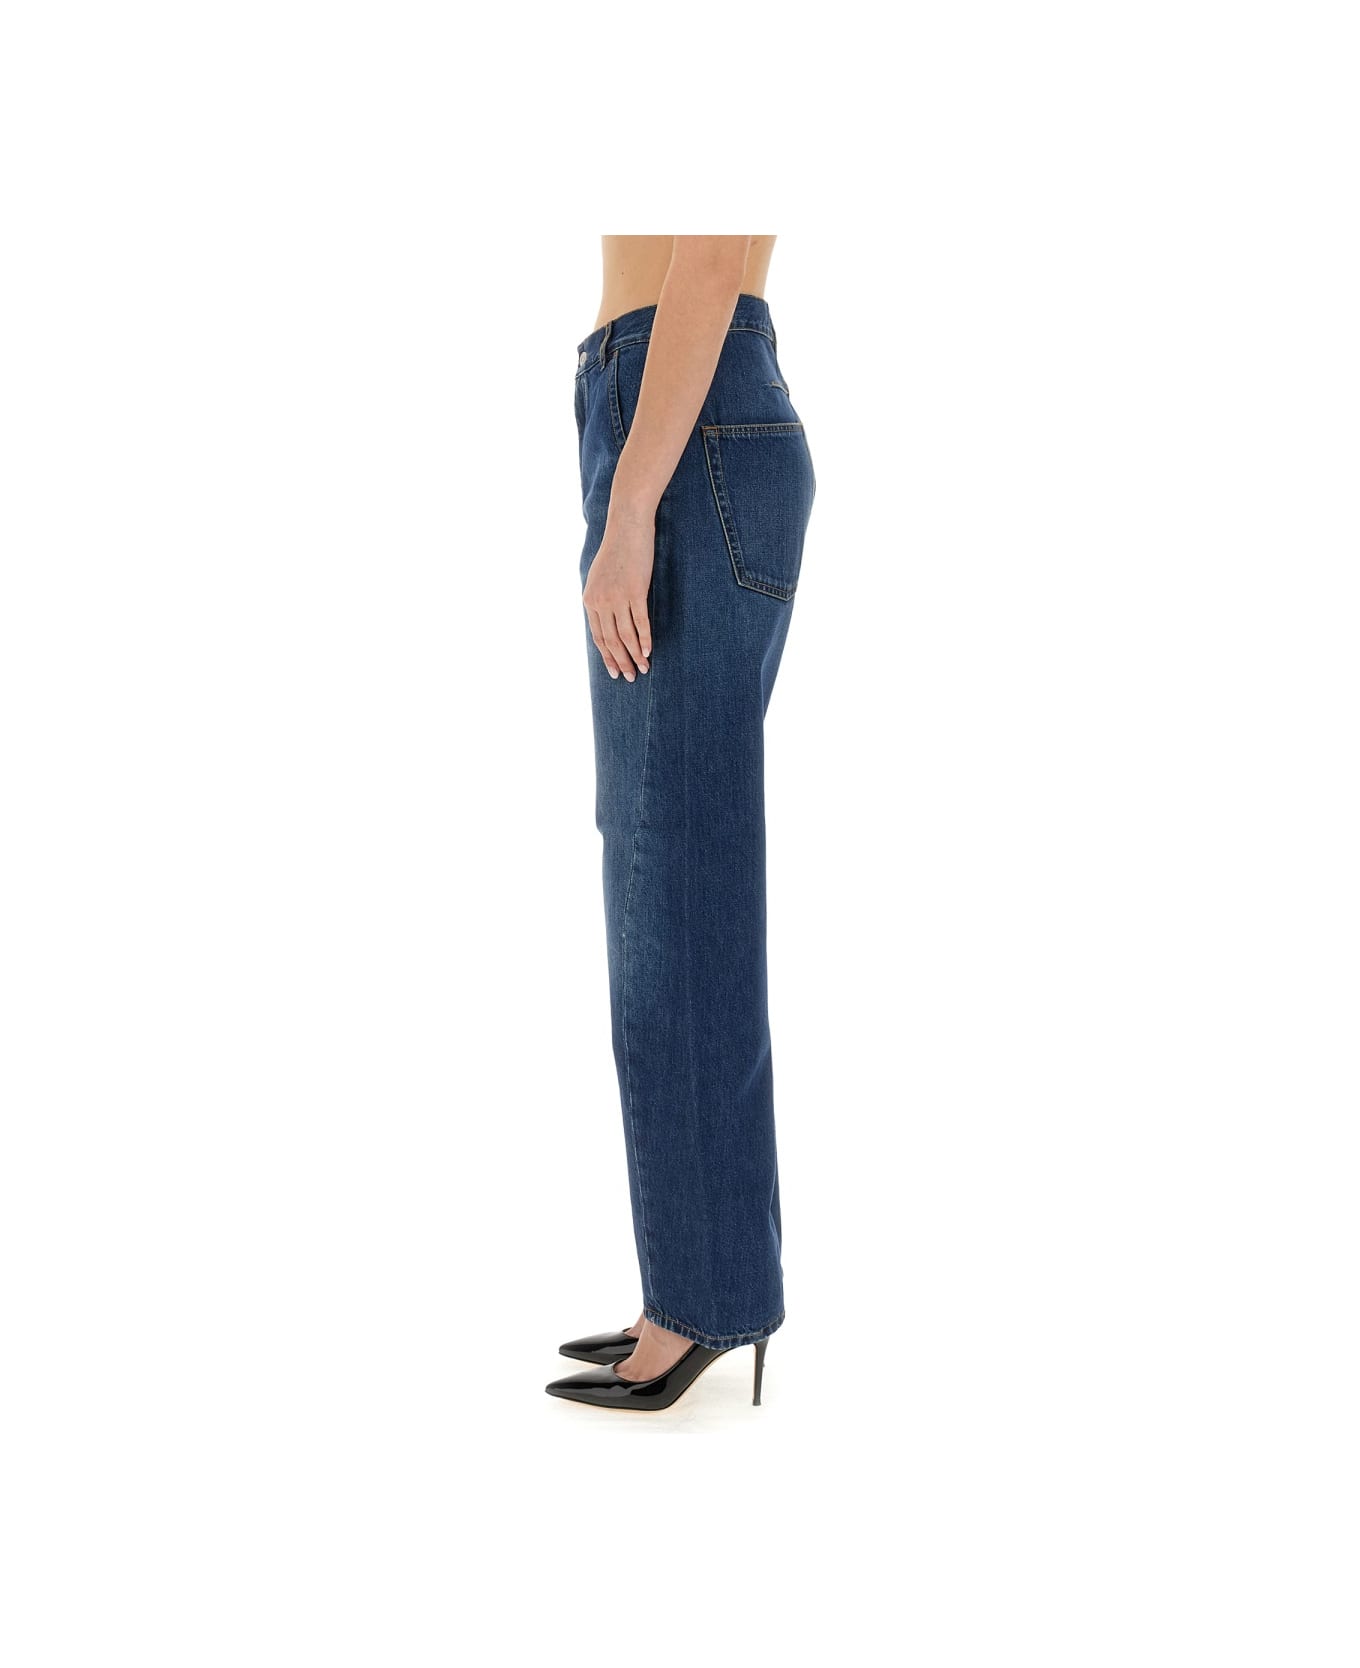 Victoria Beckham Twisted Jeans - DENIM